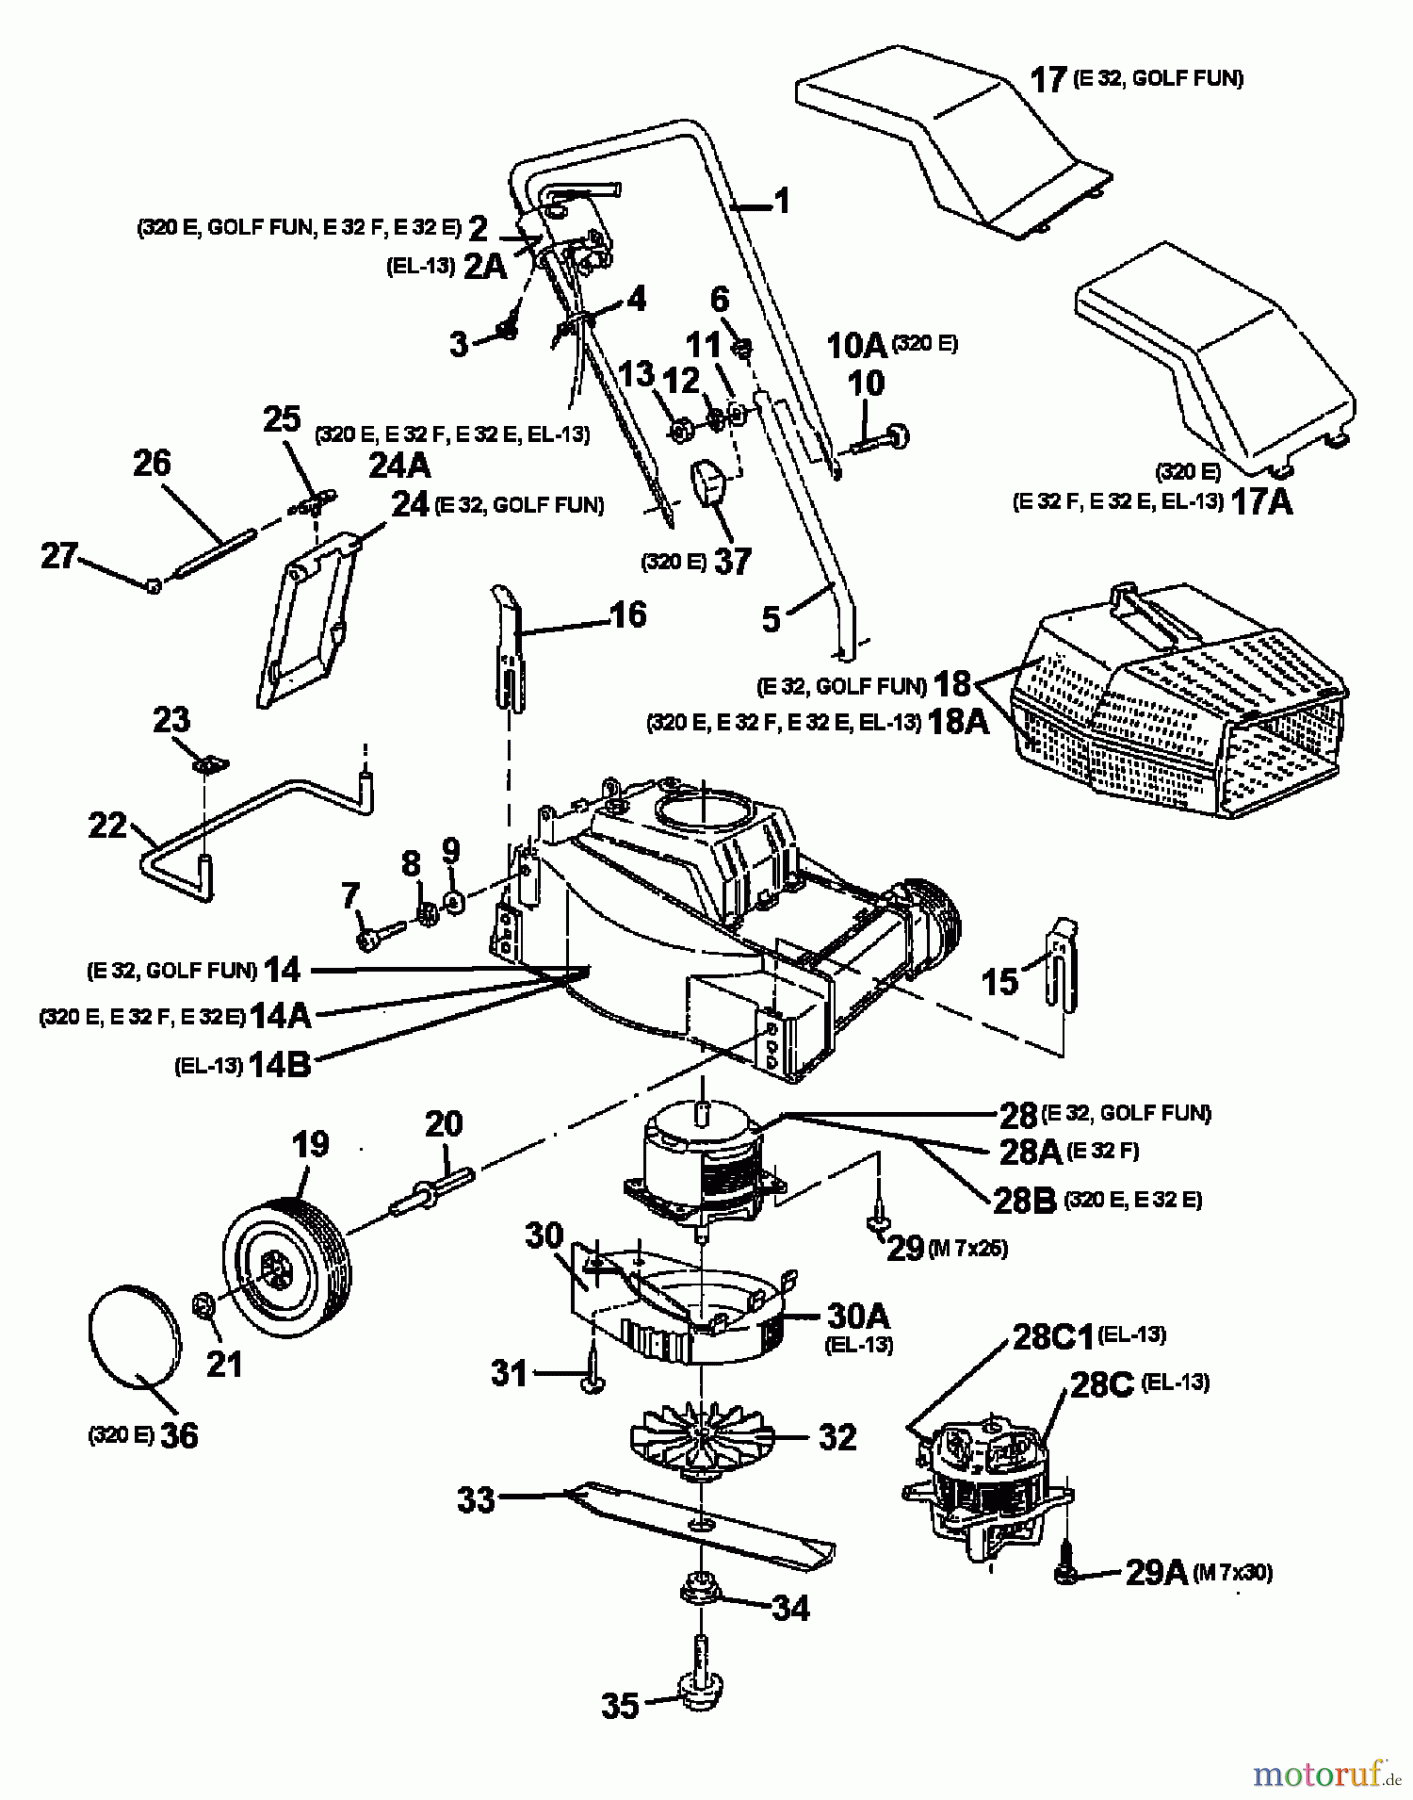  Raiffeisen Tondeuse électrique E 32 18A-A0A-628  (1998) Machine de base